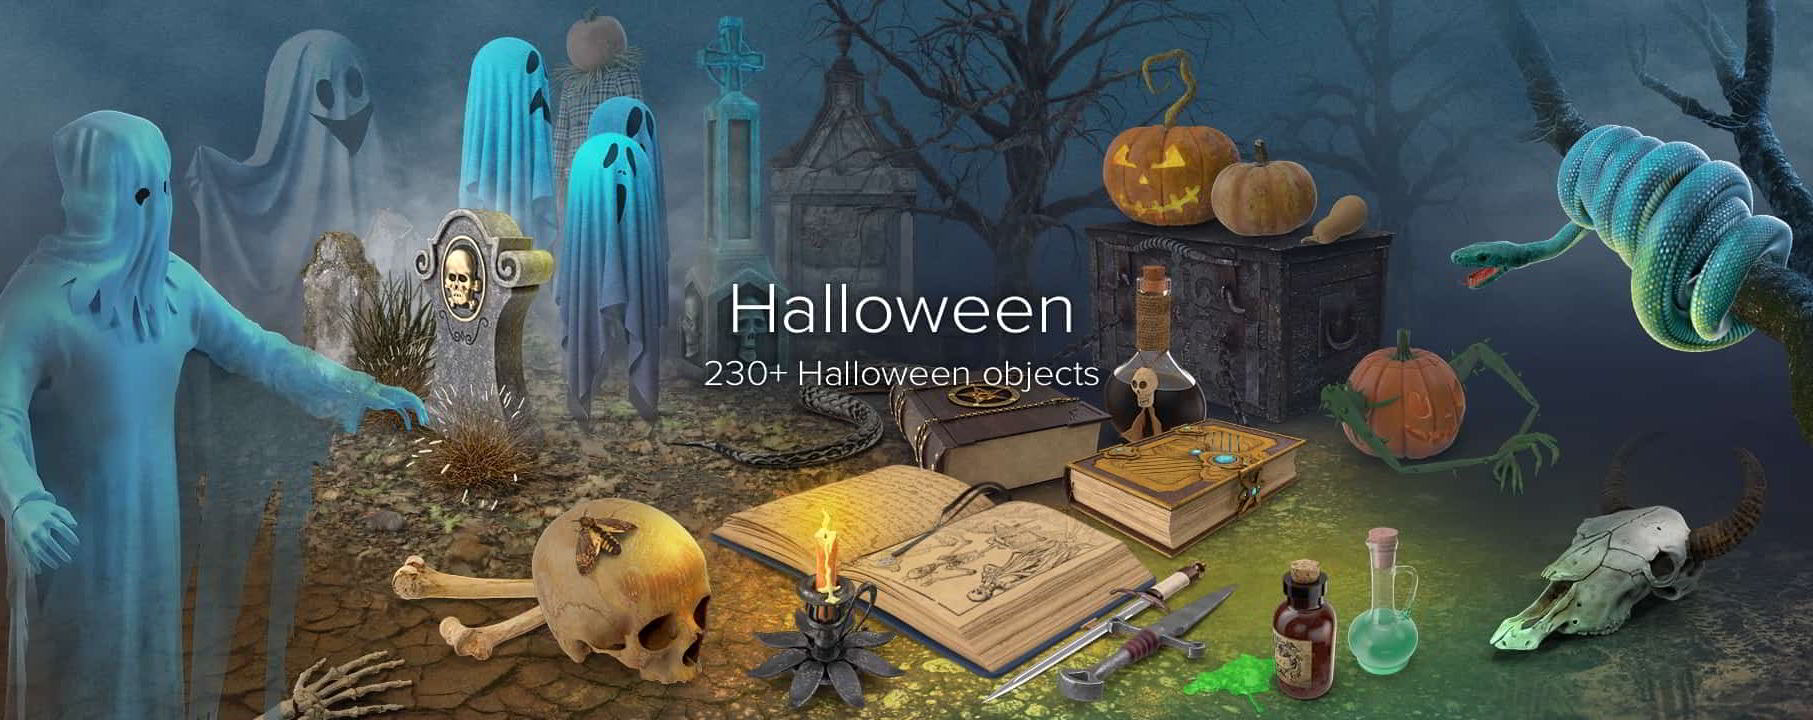 PixelSquid – Halloween Collection free download